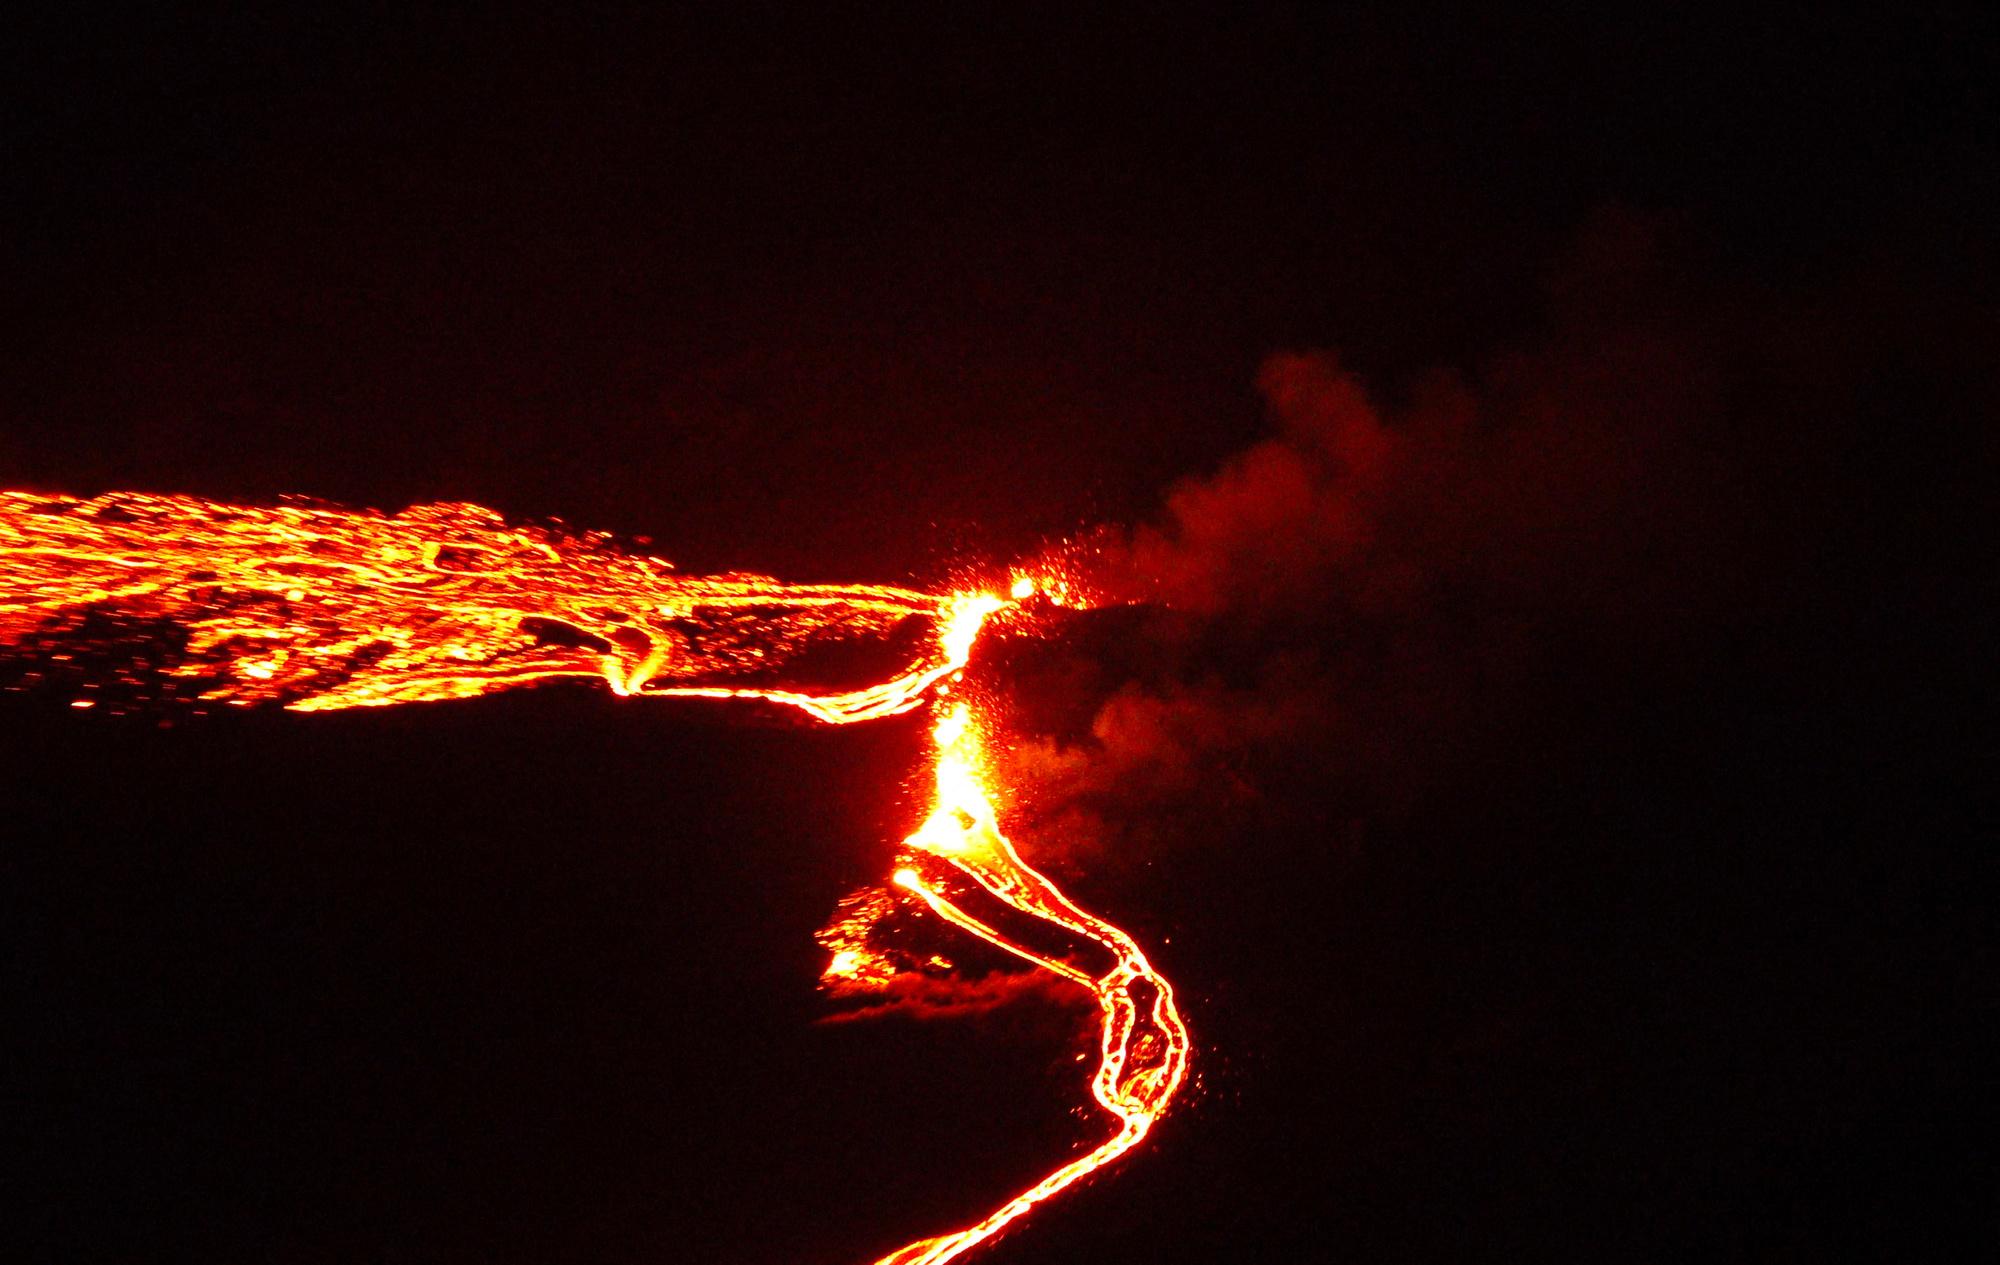 En images: une éruption volcanique illumine le ciel près de Reykjavik